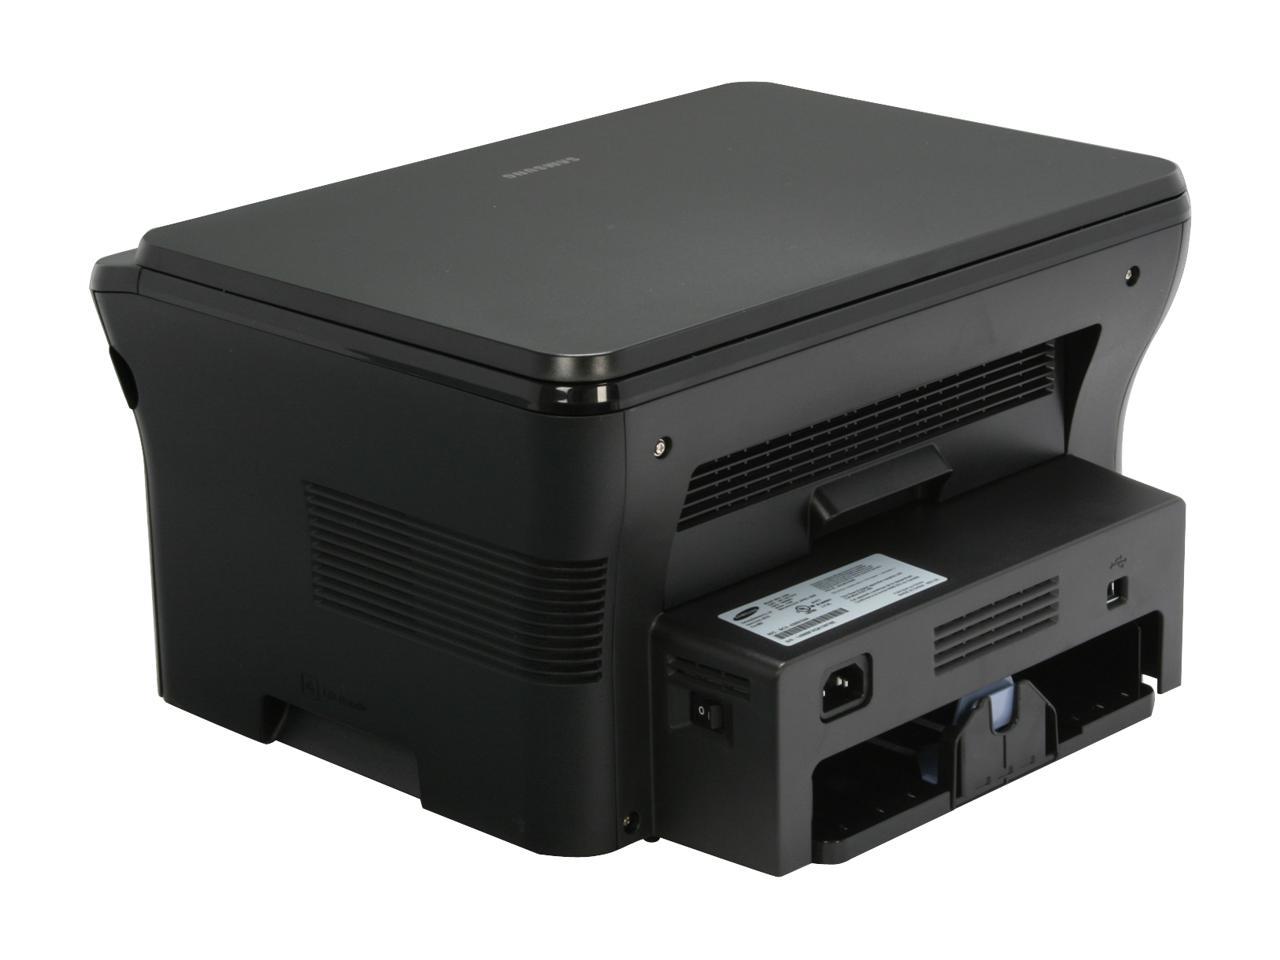 Принтер самсунг scx 4300 драйвер. Самсунг 4300 принтер. Samsung SCX 4300. Samsung SCX-4300 Series. SCX-4300 сканер.